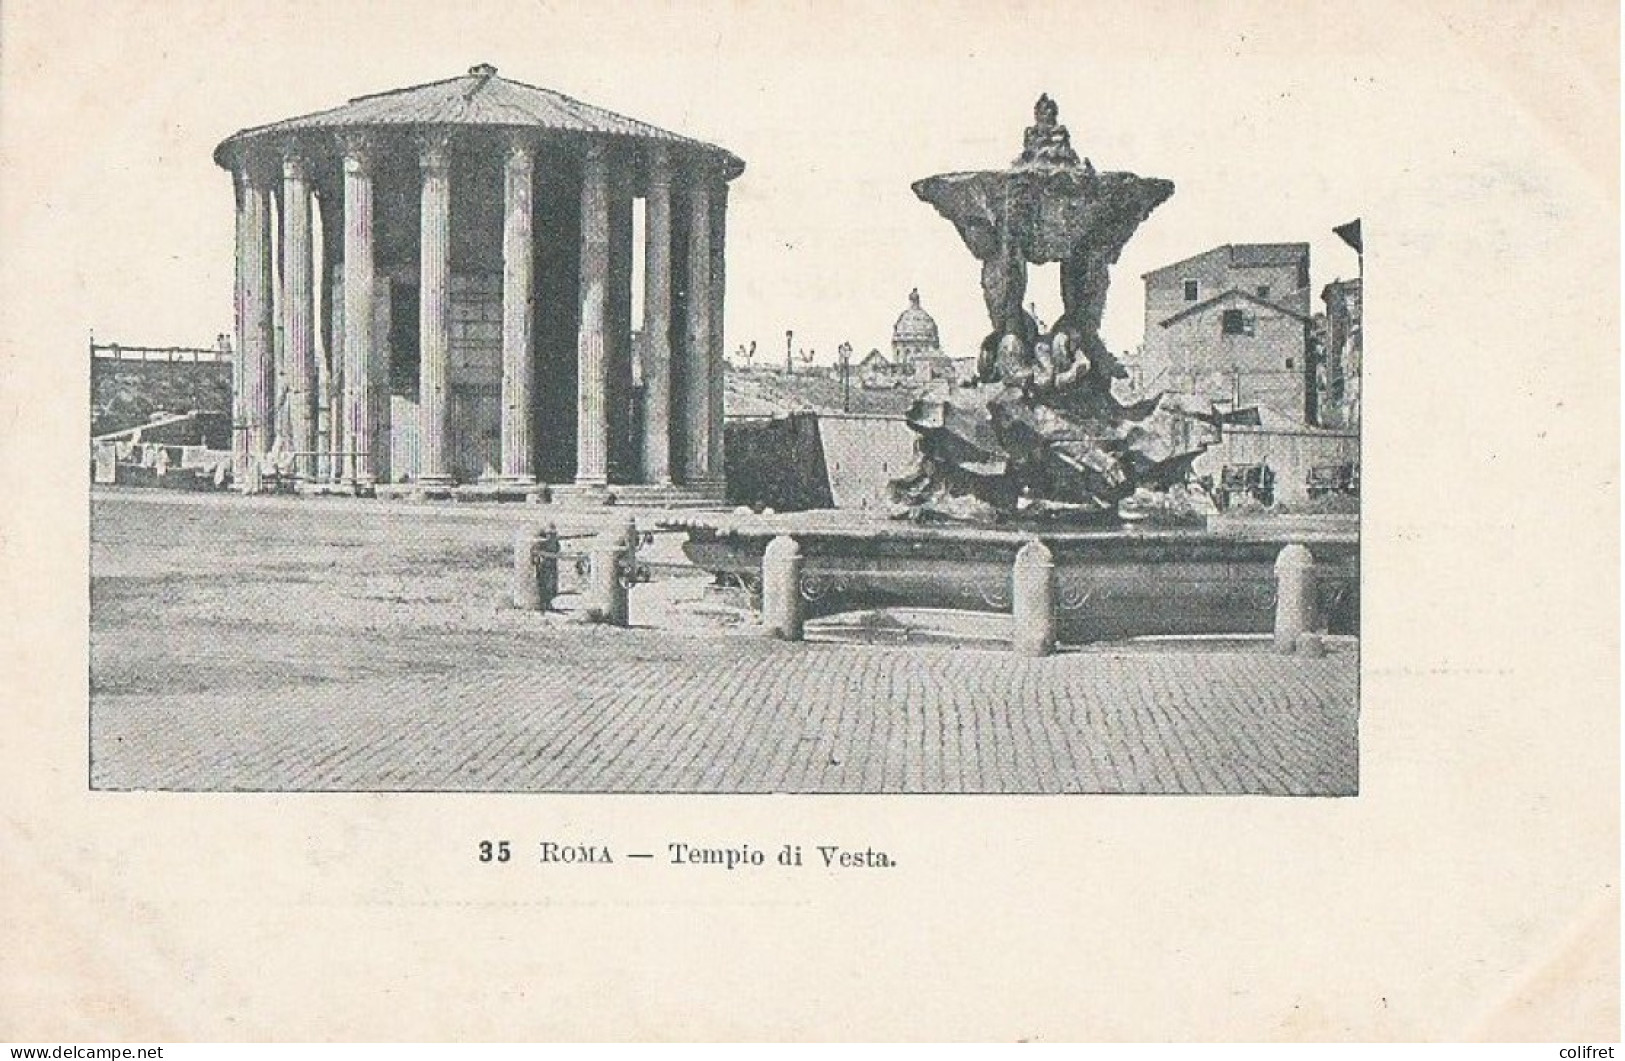 Lazio - Roma  -  Tempio Di Vesta - Andere Monumente & Gebäude